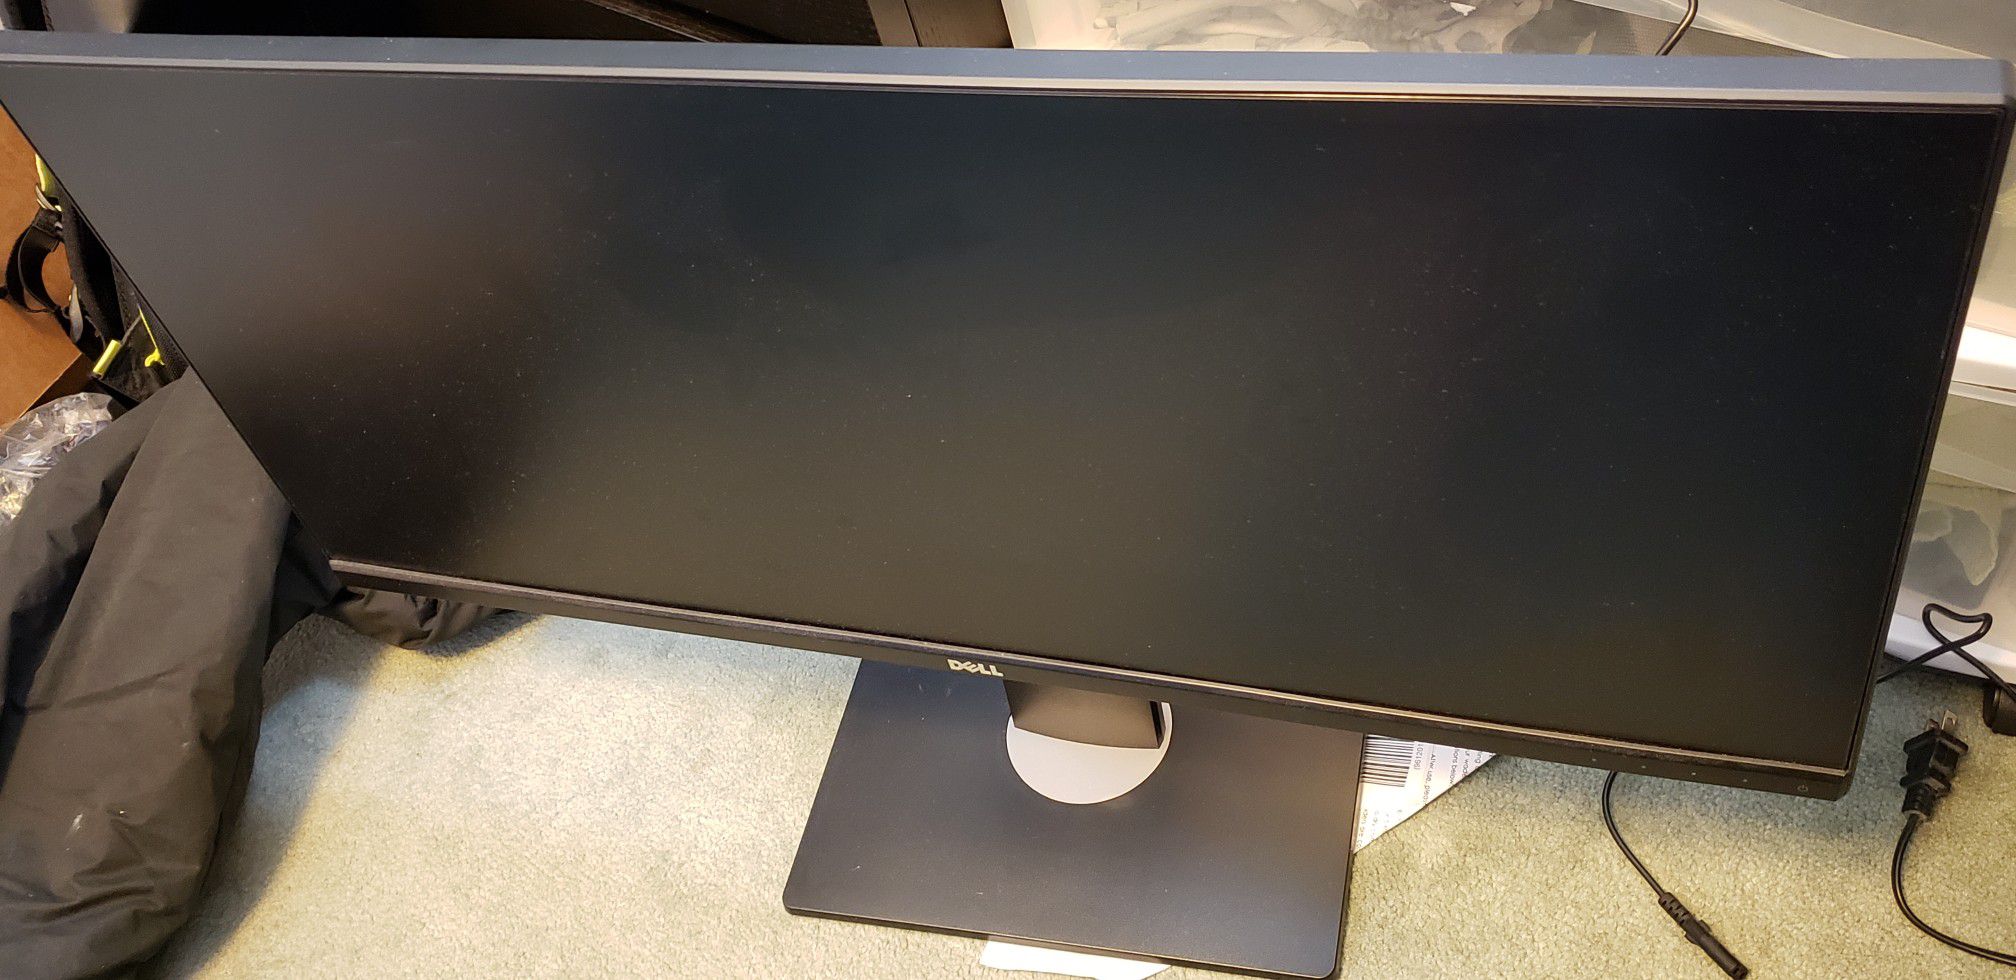 Dell ultra wide monitor